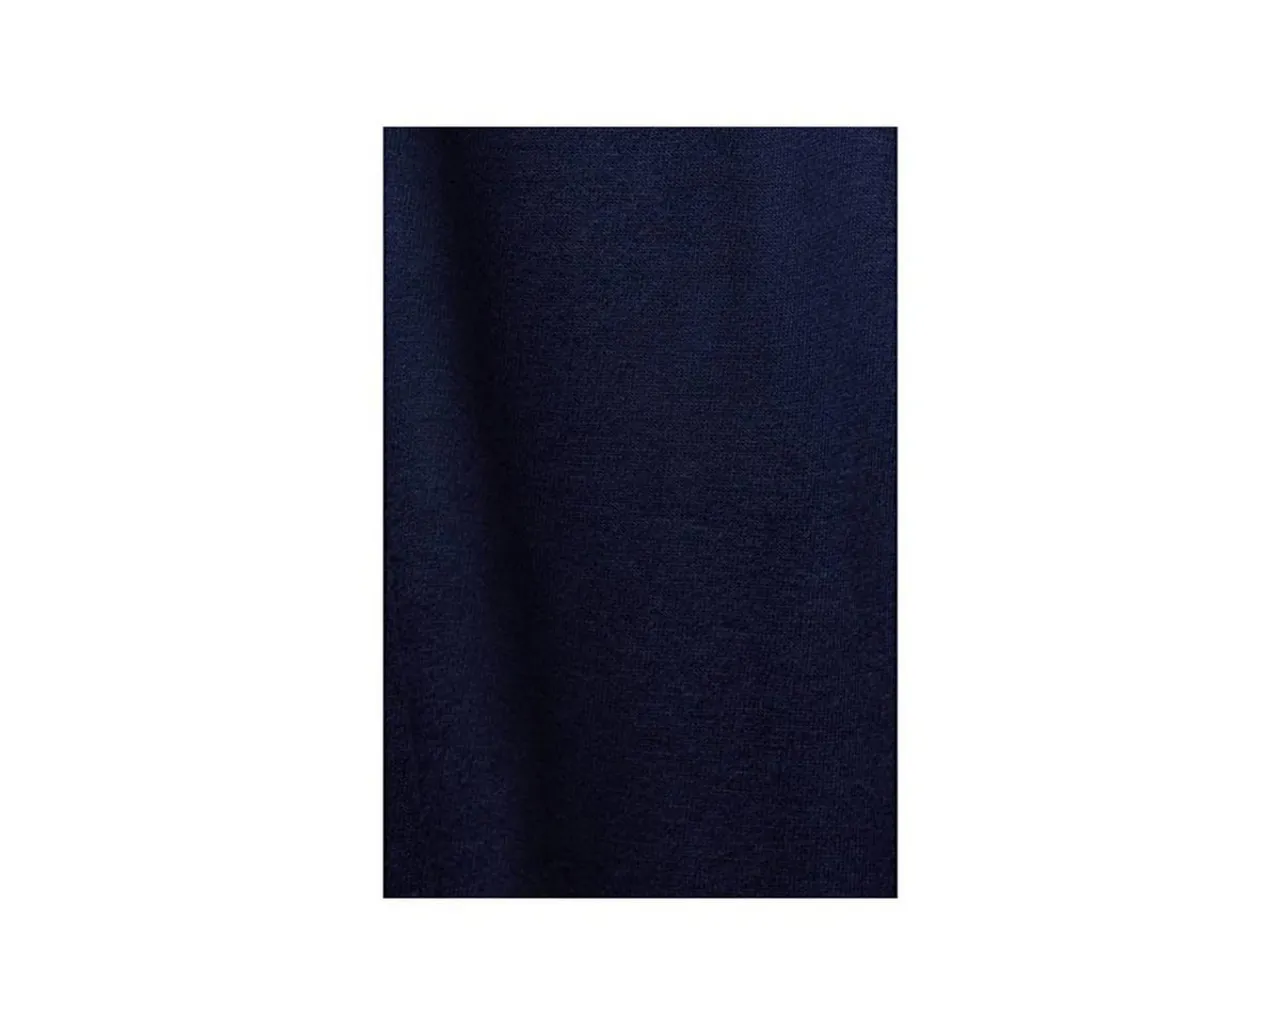 Esprit Jerseykleid marineblau (1-tlg)